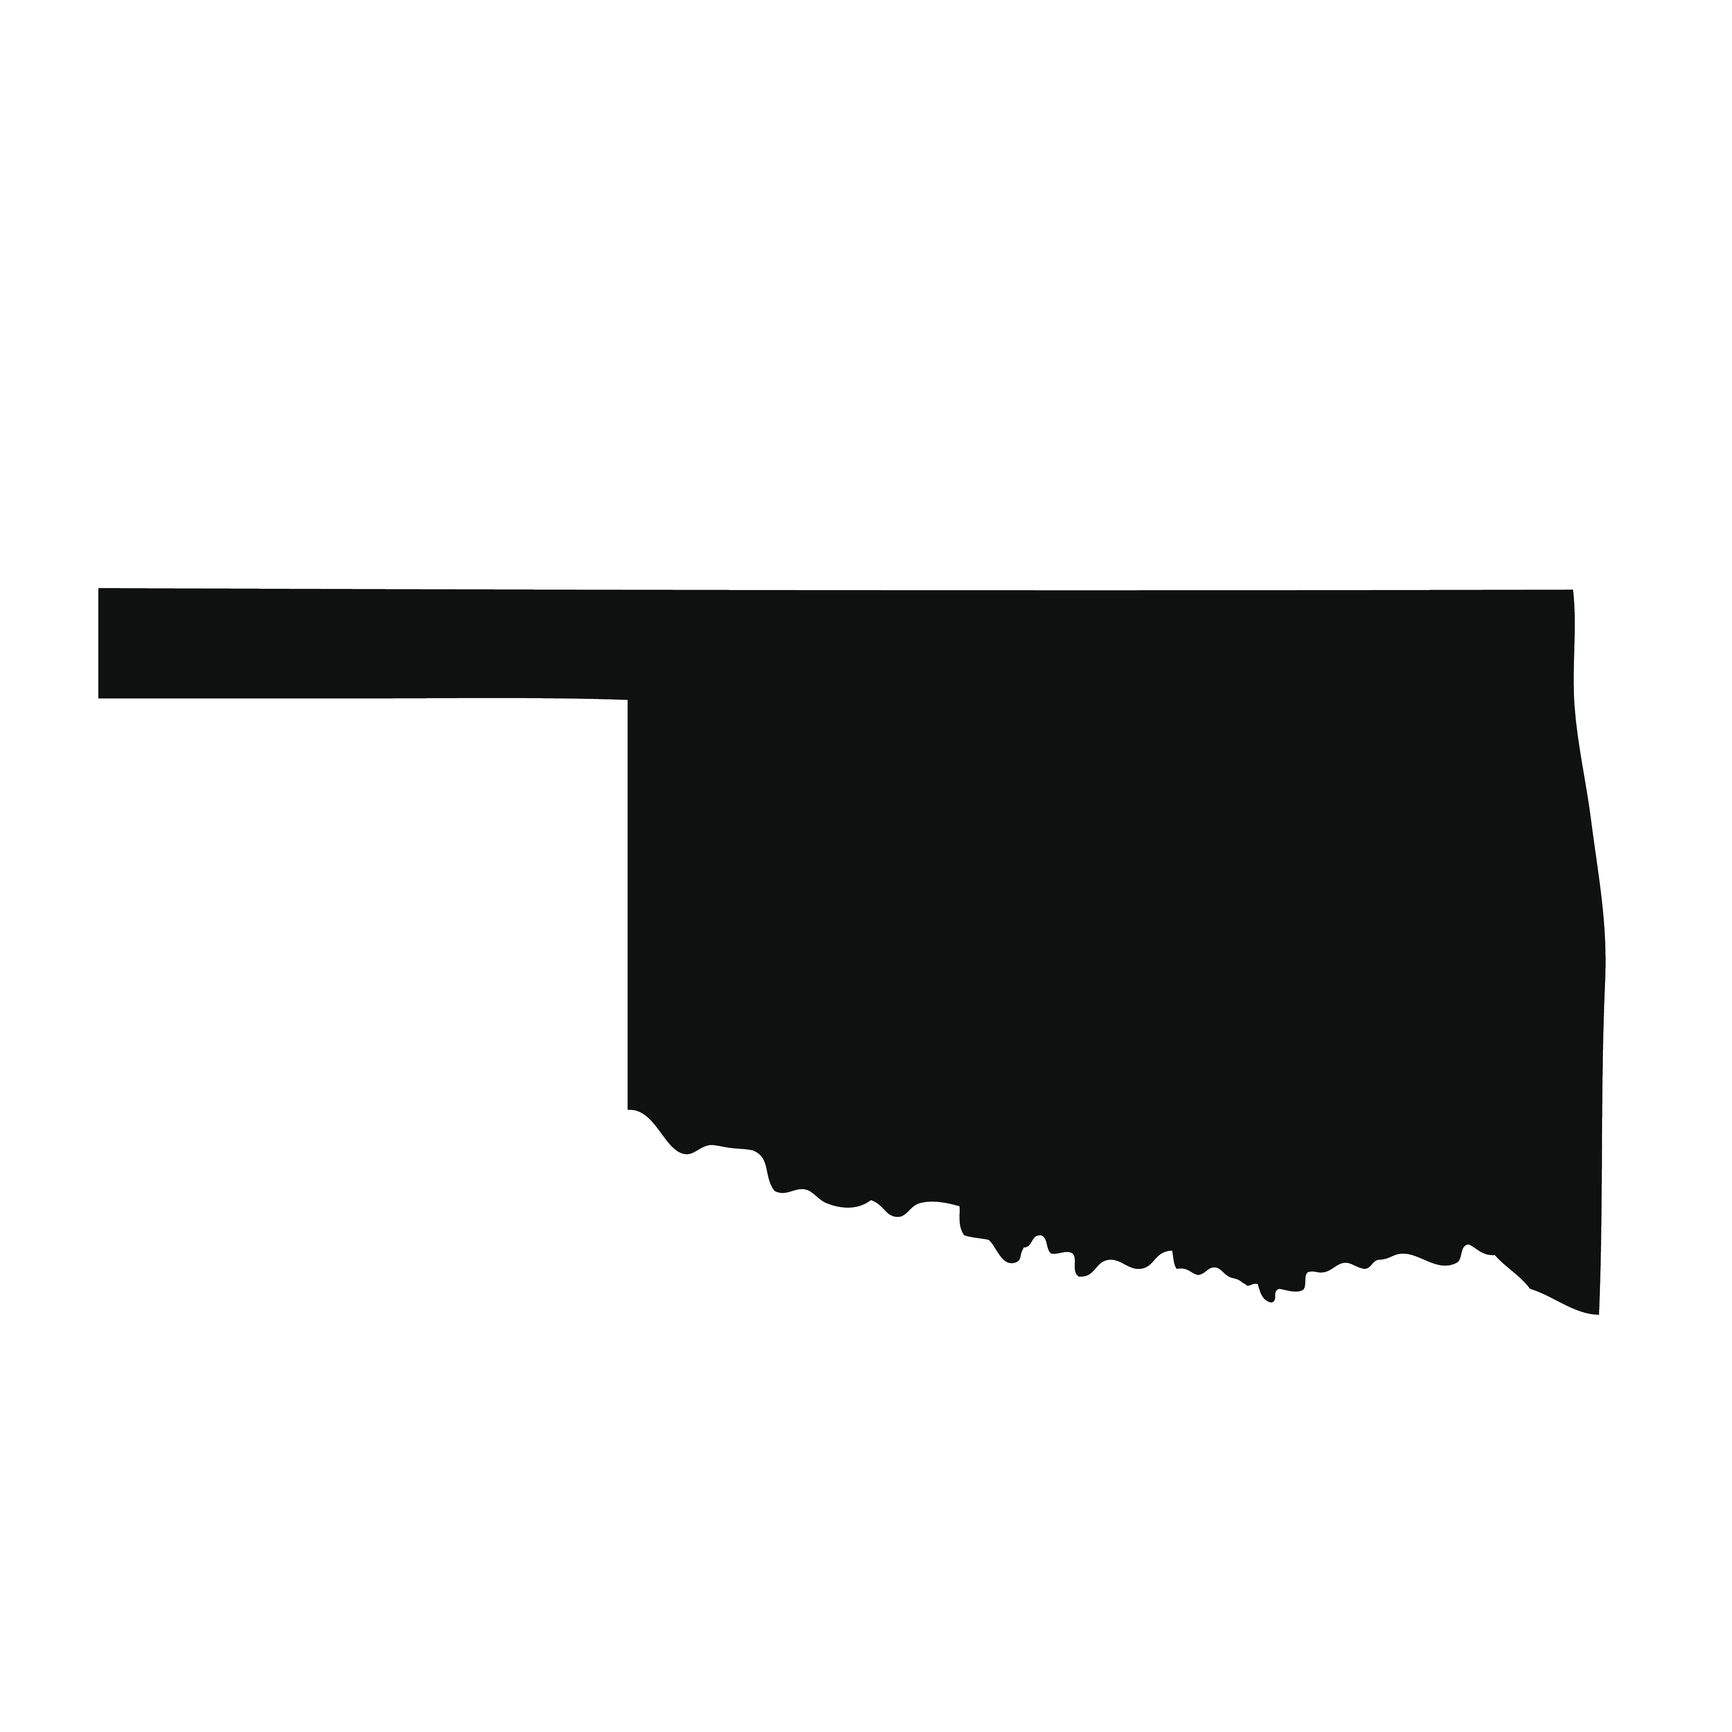 A silhouette of Oklahoma